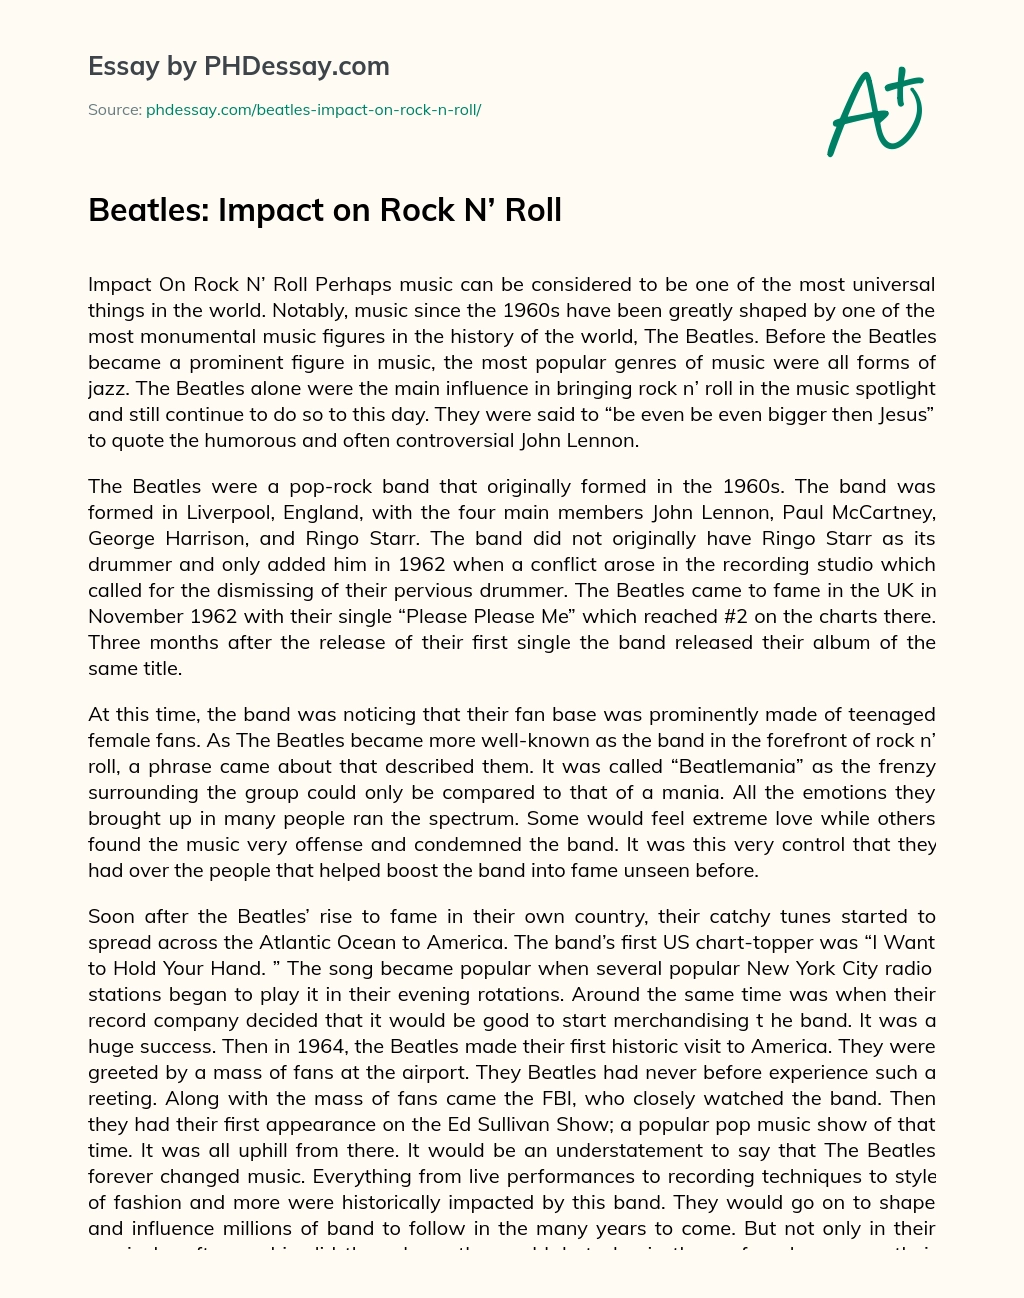 Beatles: Impact on Rock N’ Roll essay